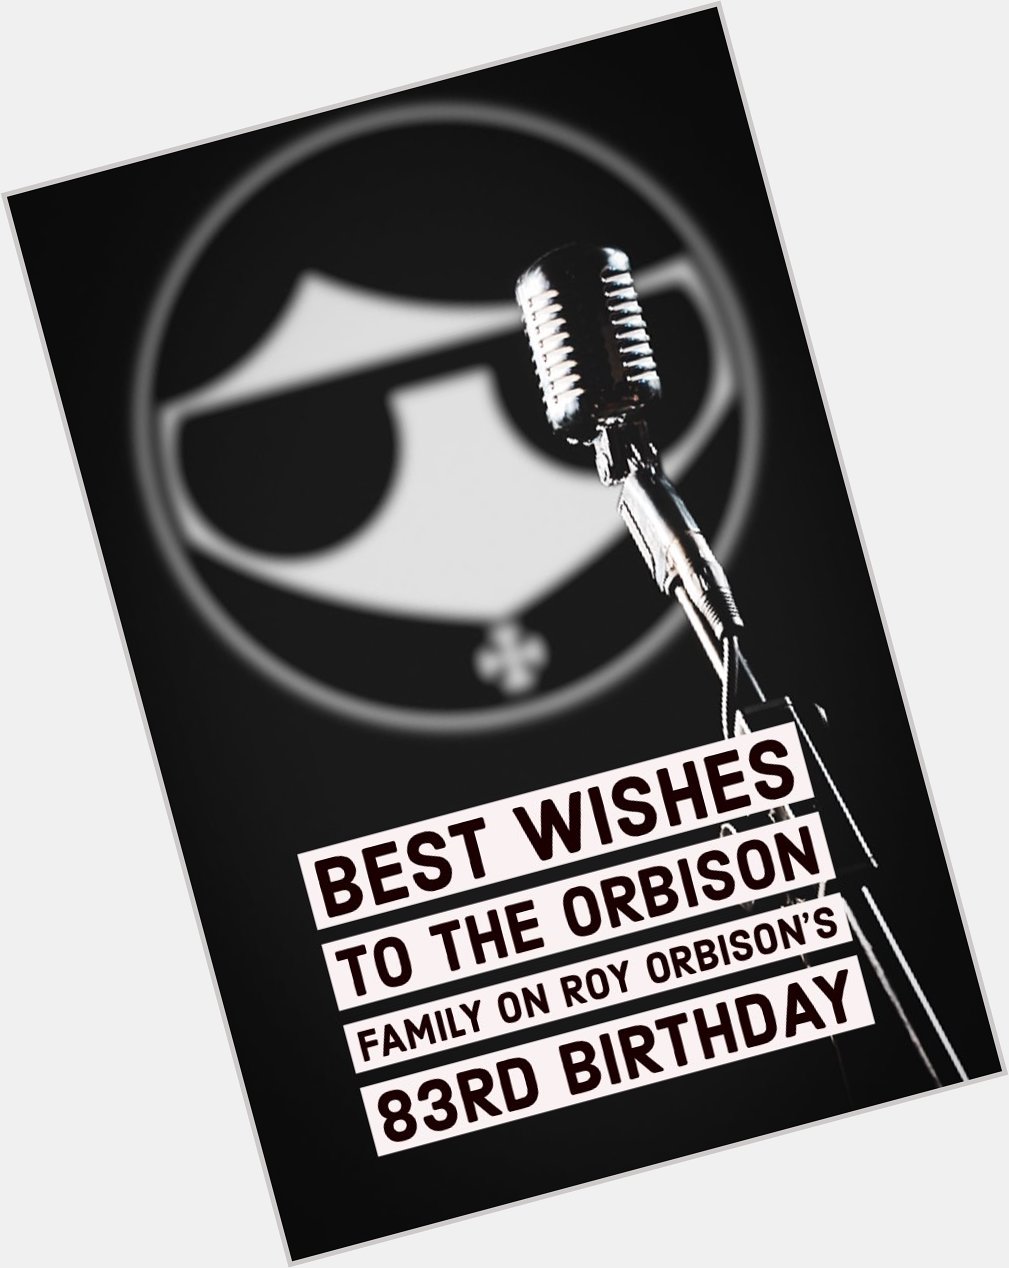 Happy birthday, Roy Orbison. 